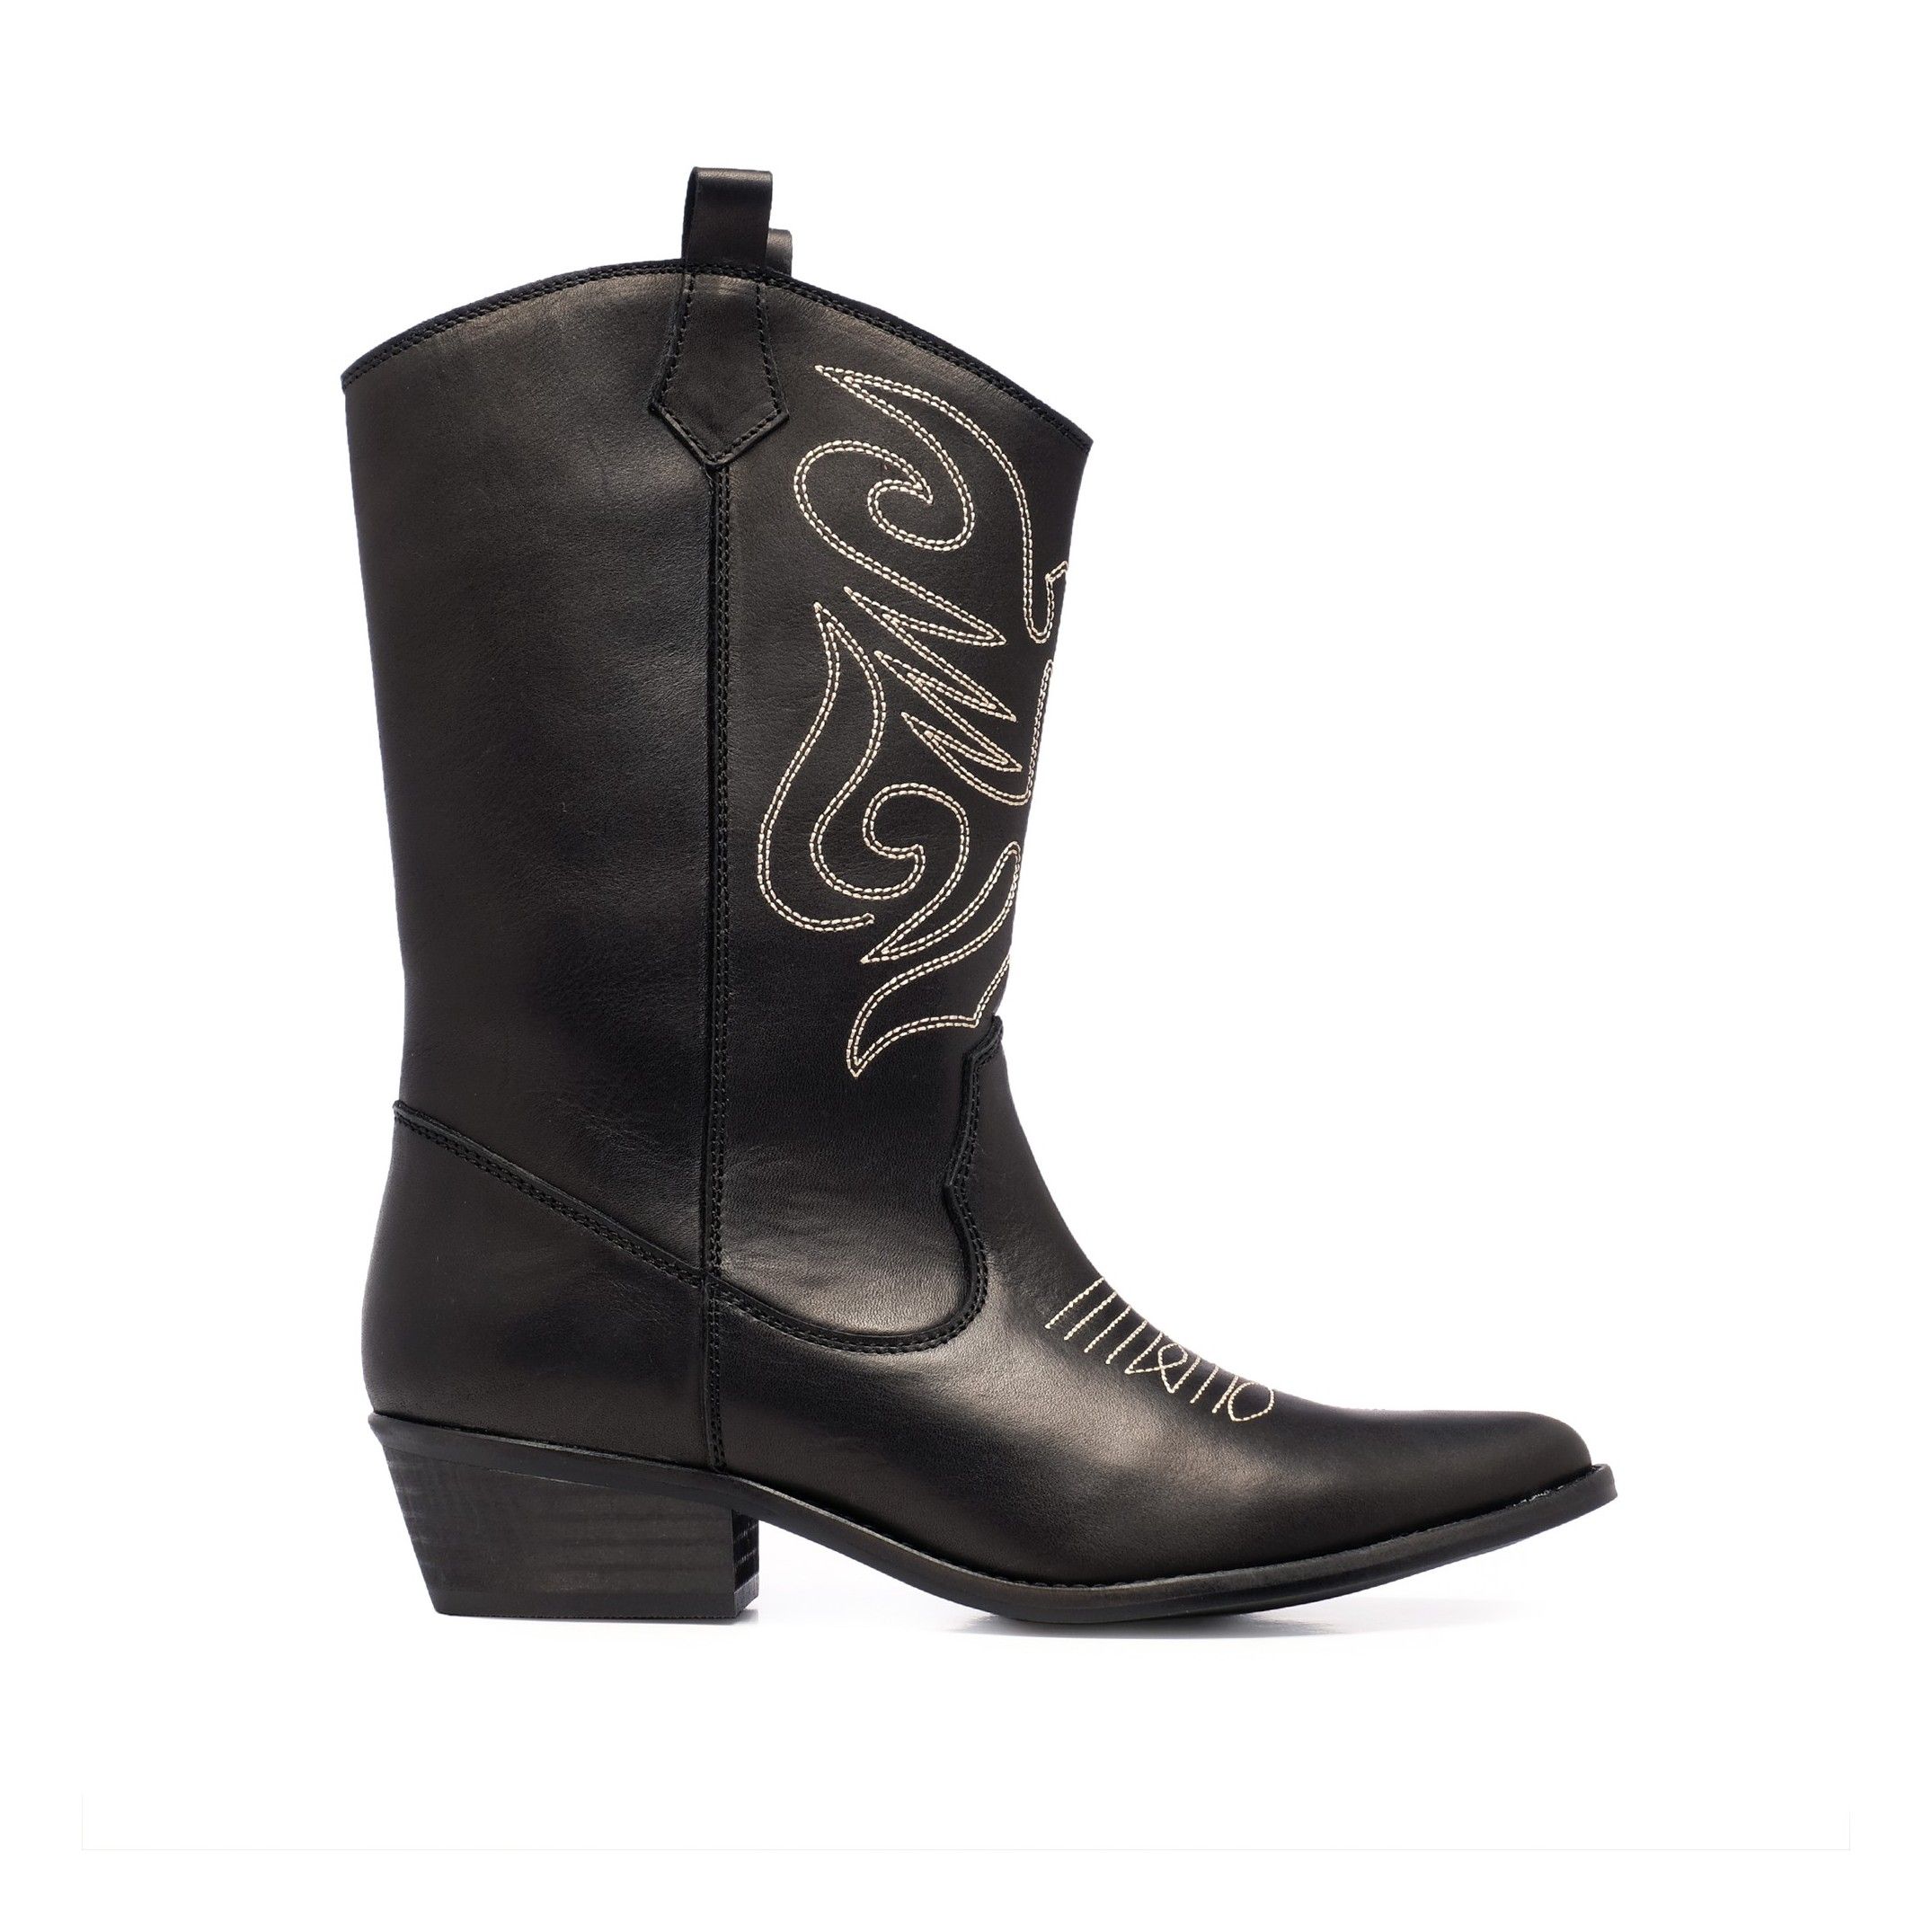 Eva Lopez Leather Cowboy Boots Women Black